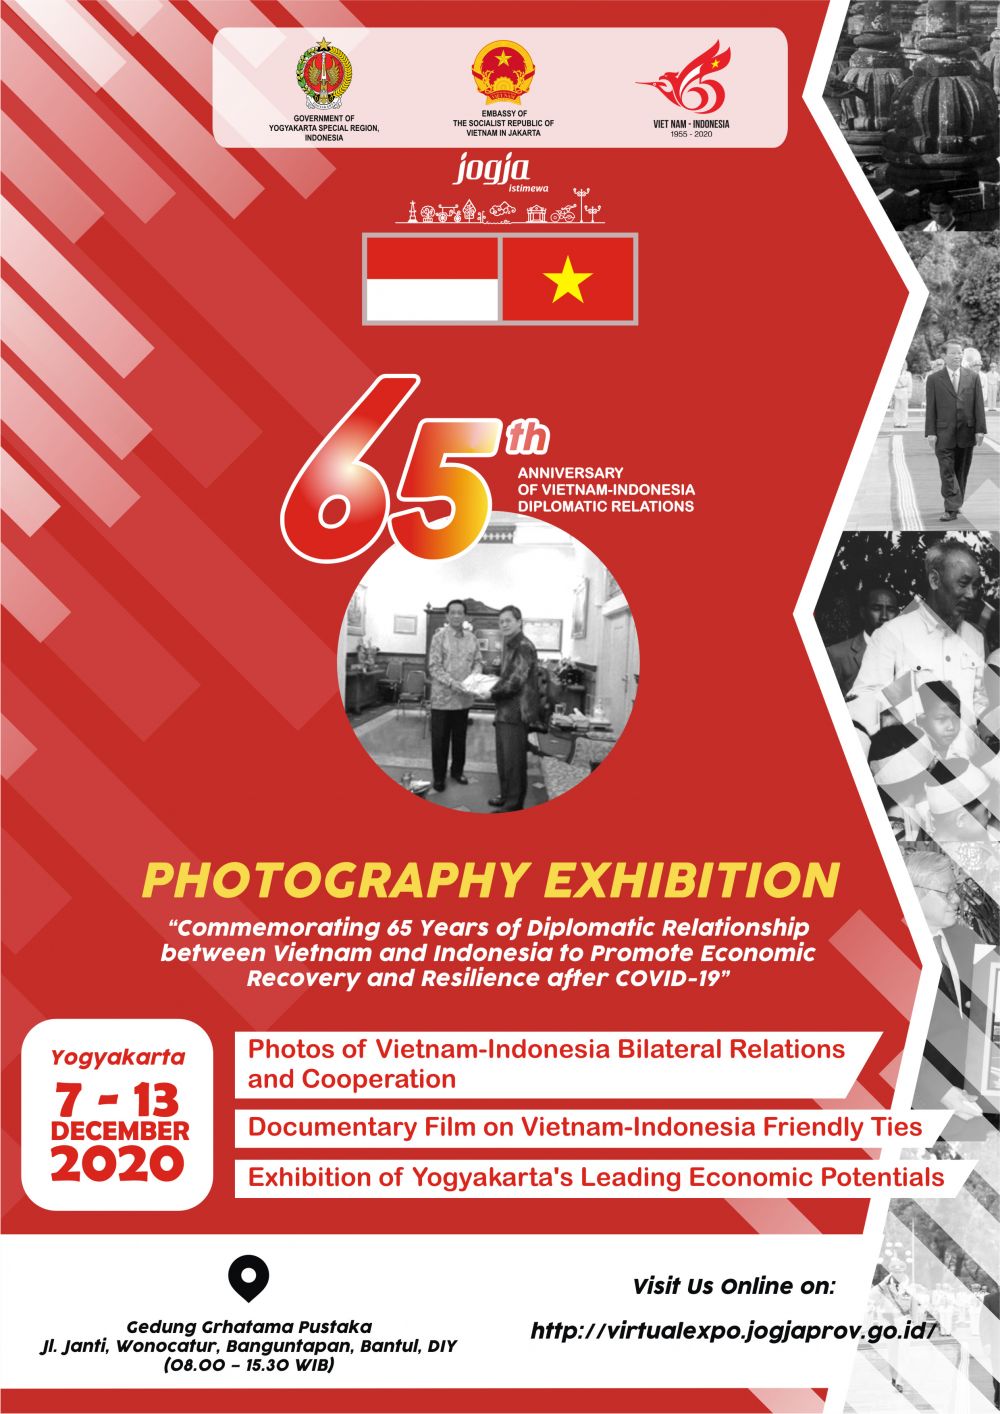 Triển lãm ảnh nhân dịp kỷ niệm 65 năm quan hệ Việt Nam-Indonesia